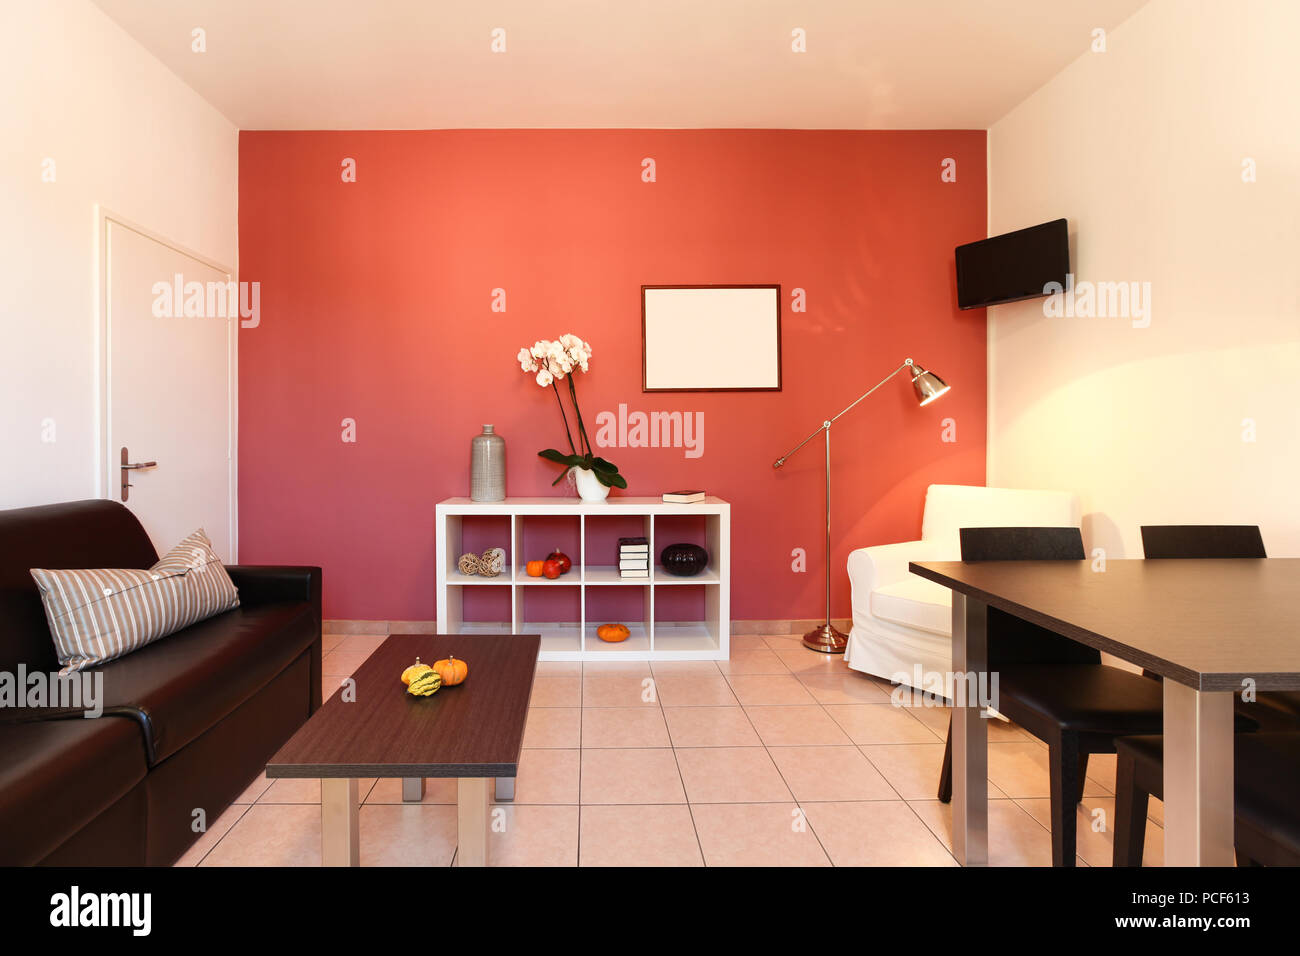 El interior del apartamento, salón con pared roja Foto de stock